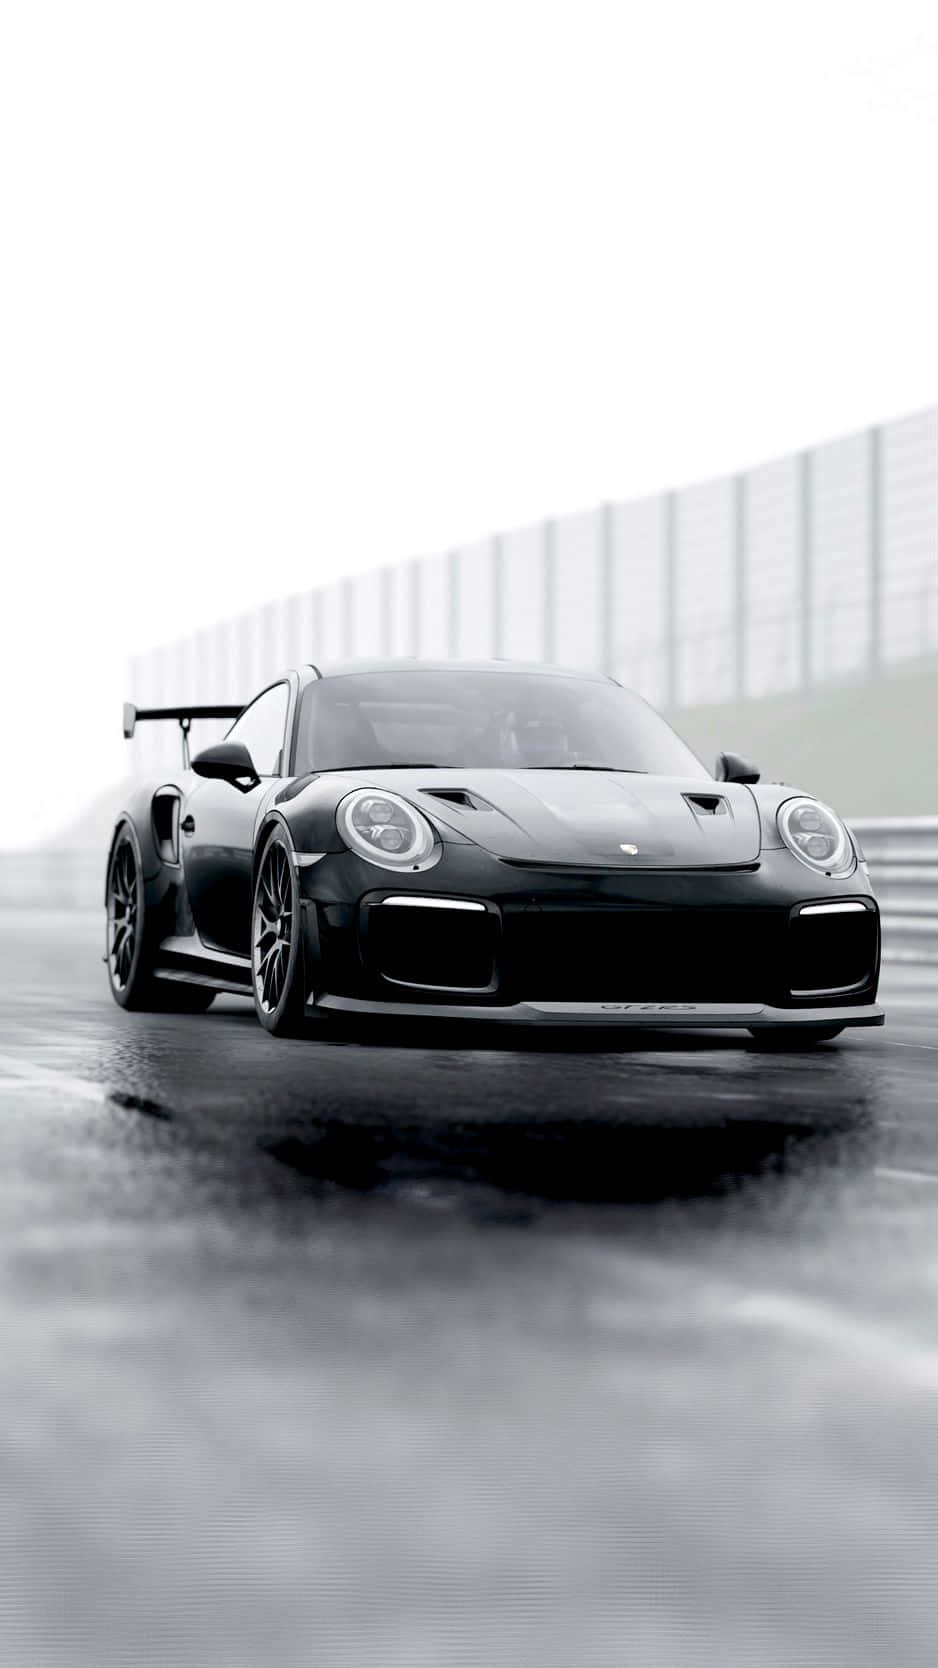 Porsche iPhone Wallpaper: Sleek Speed at Your Fingertips Wallpaper